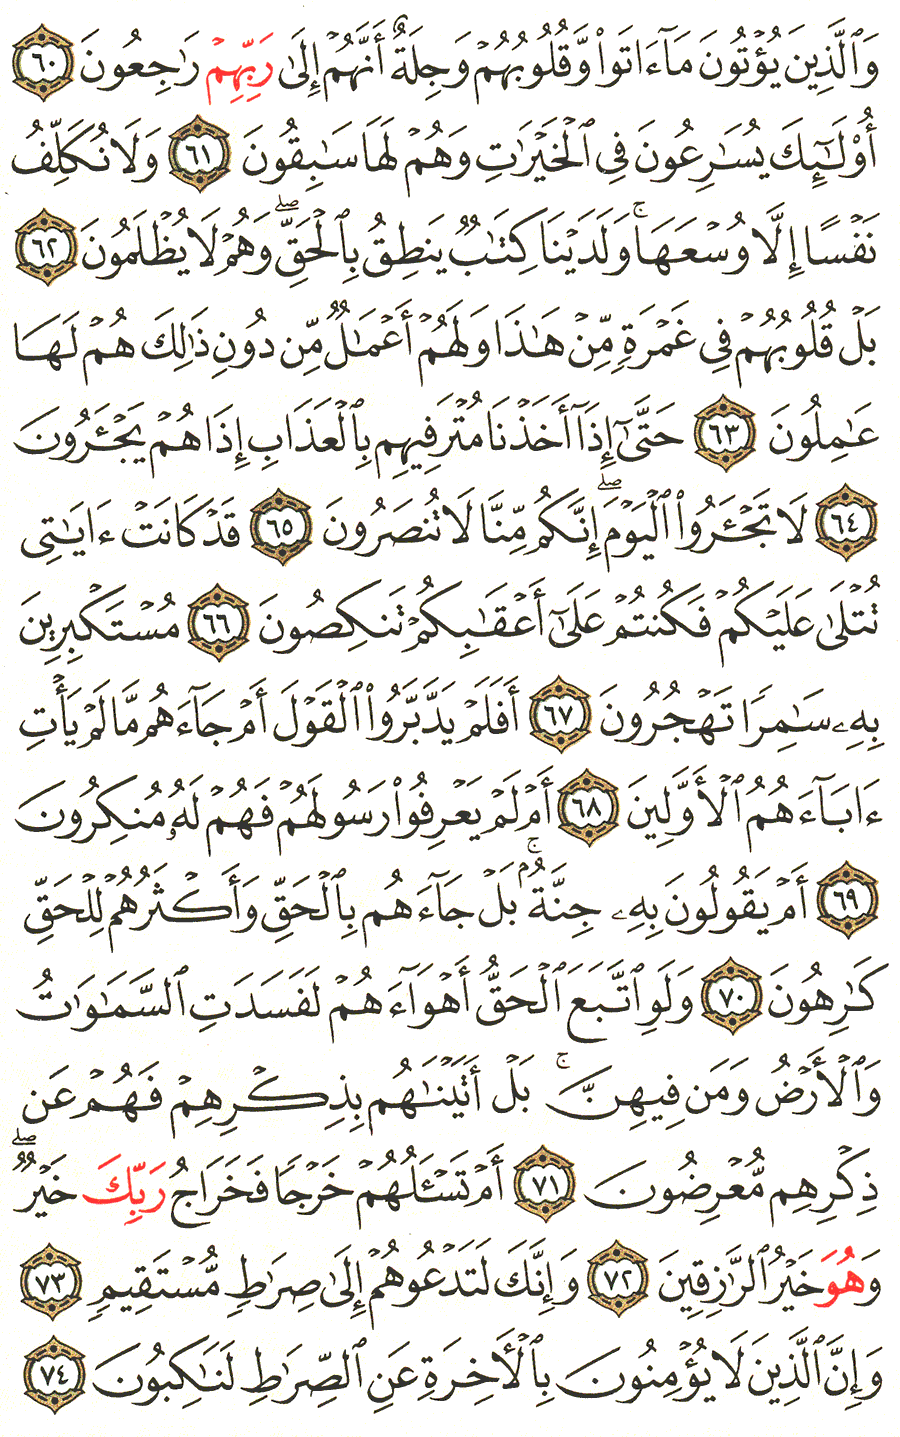 الصفحة 346 من القرآن الكريم